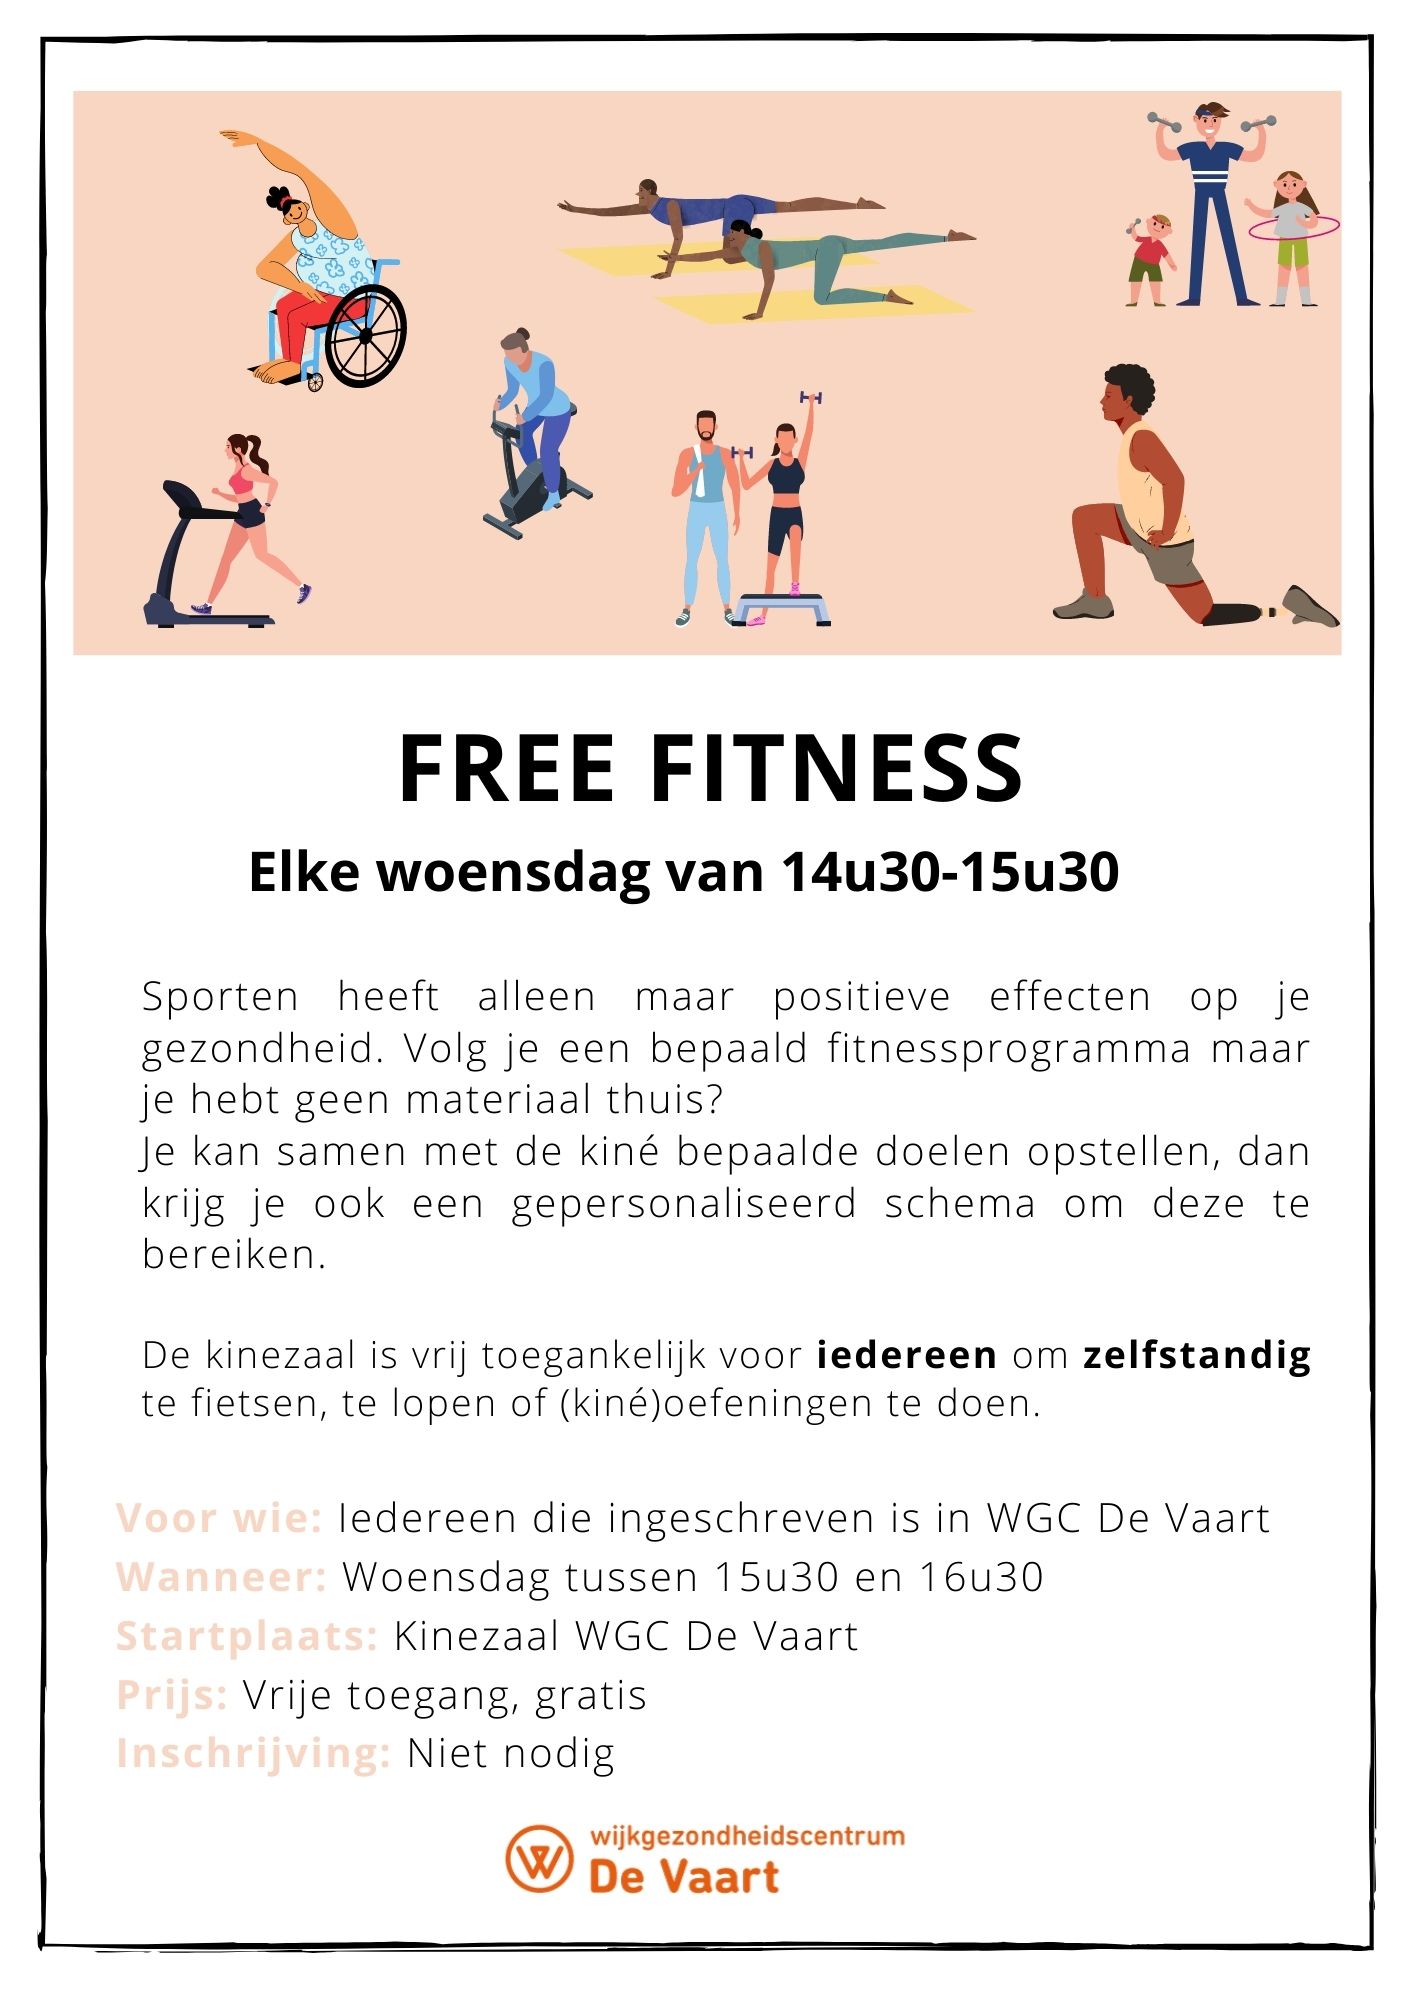 Free Fitness - Wijkgezondheidscentrum